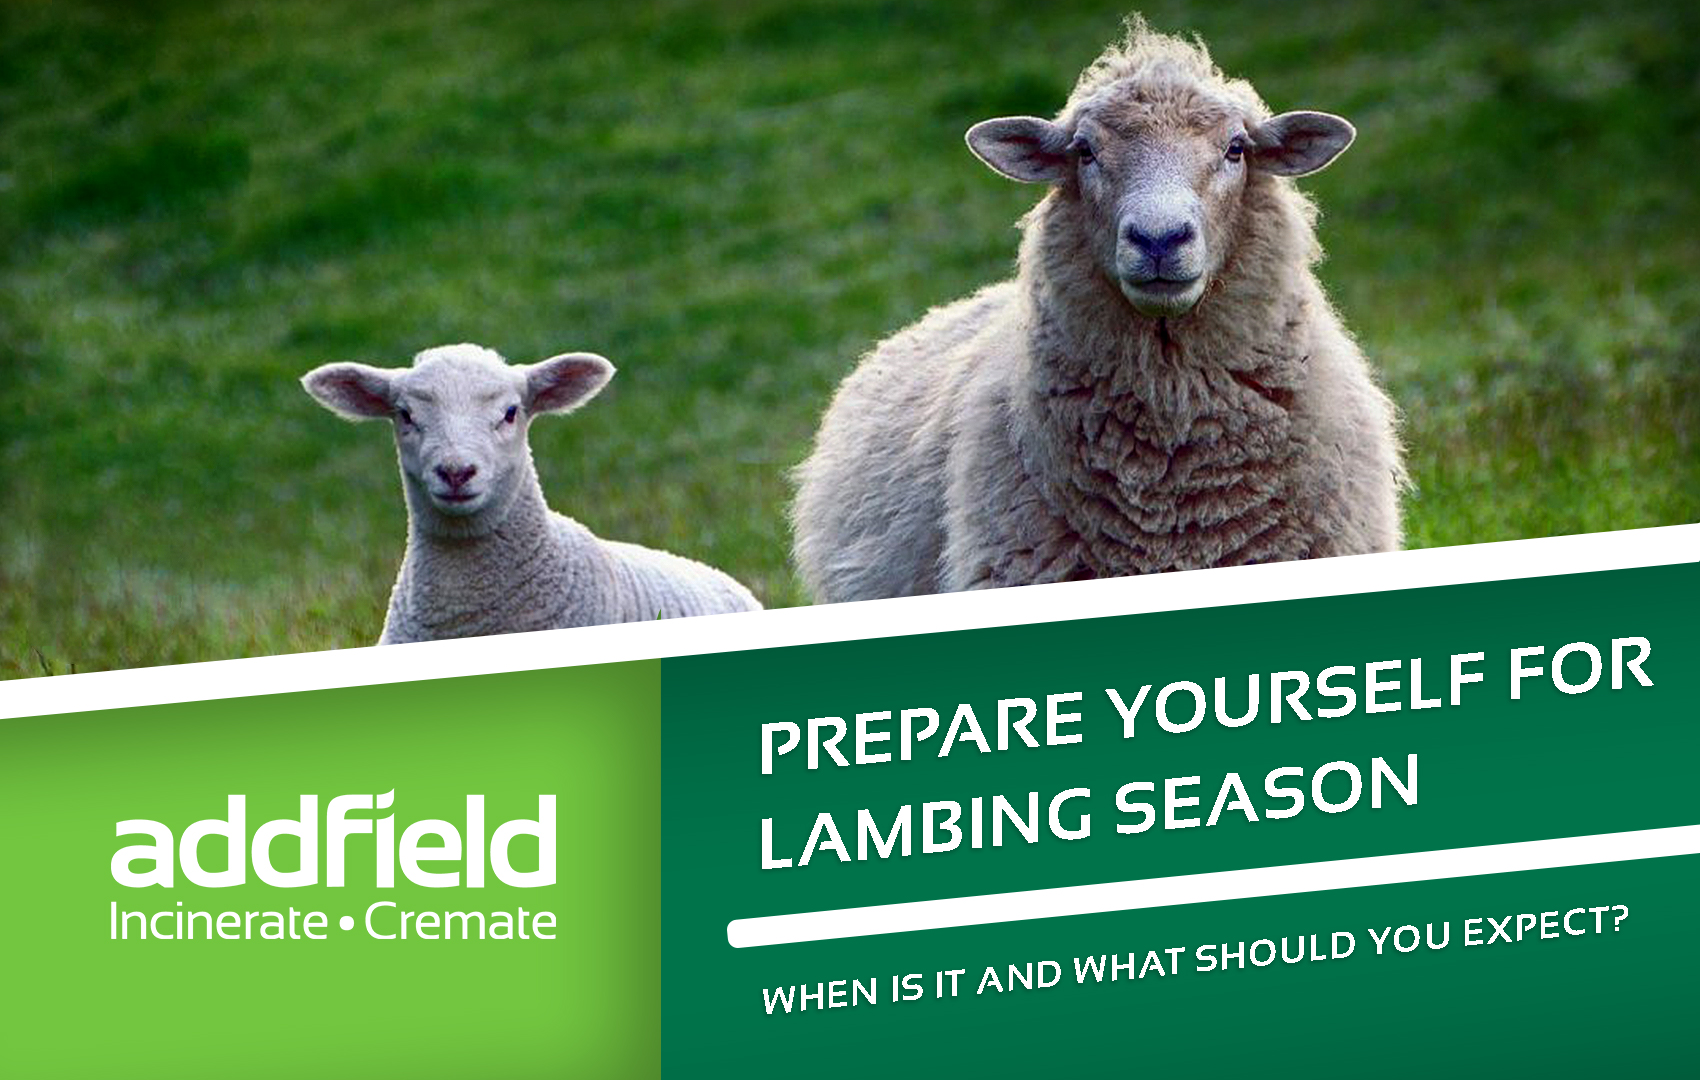 Sheep at lambing season